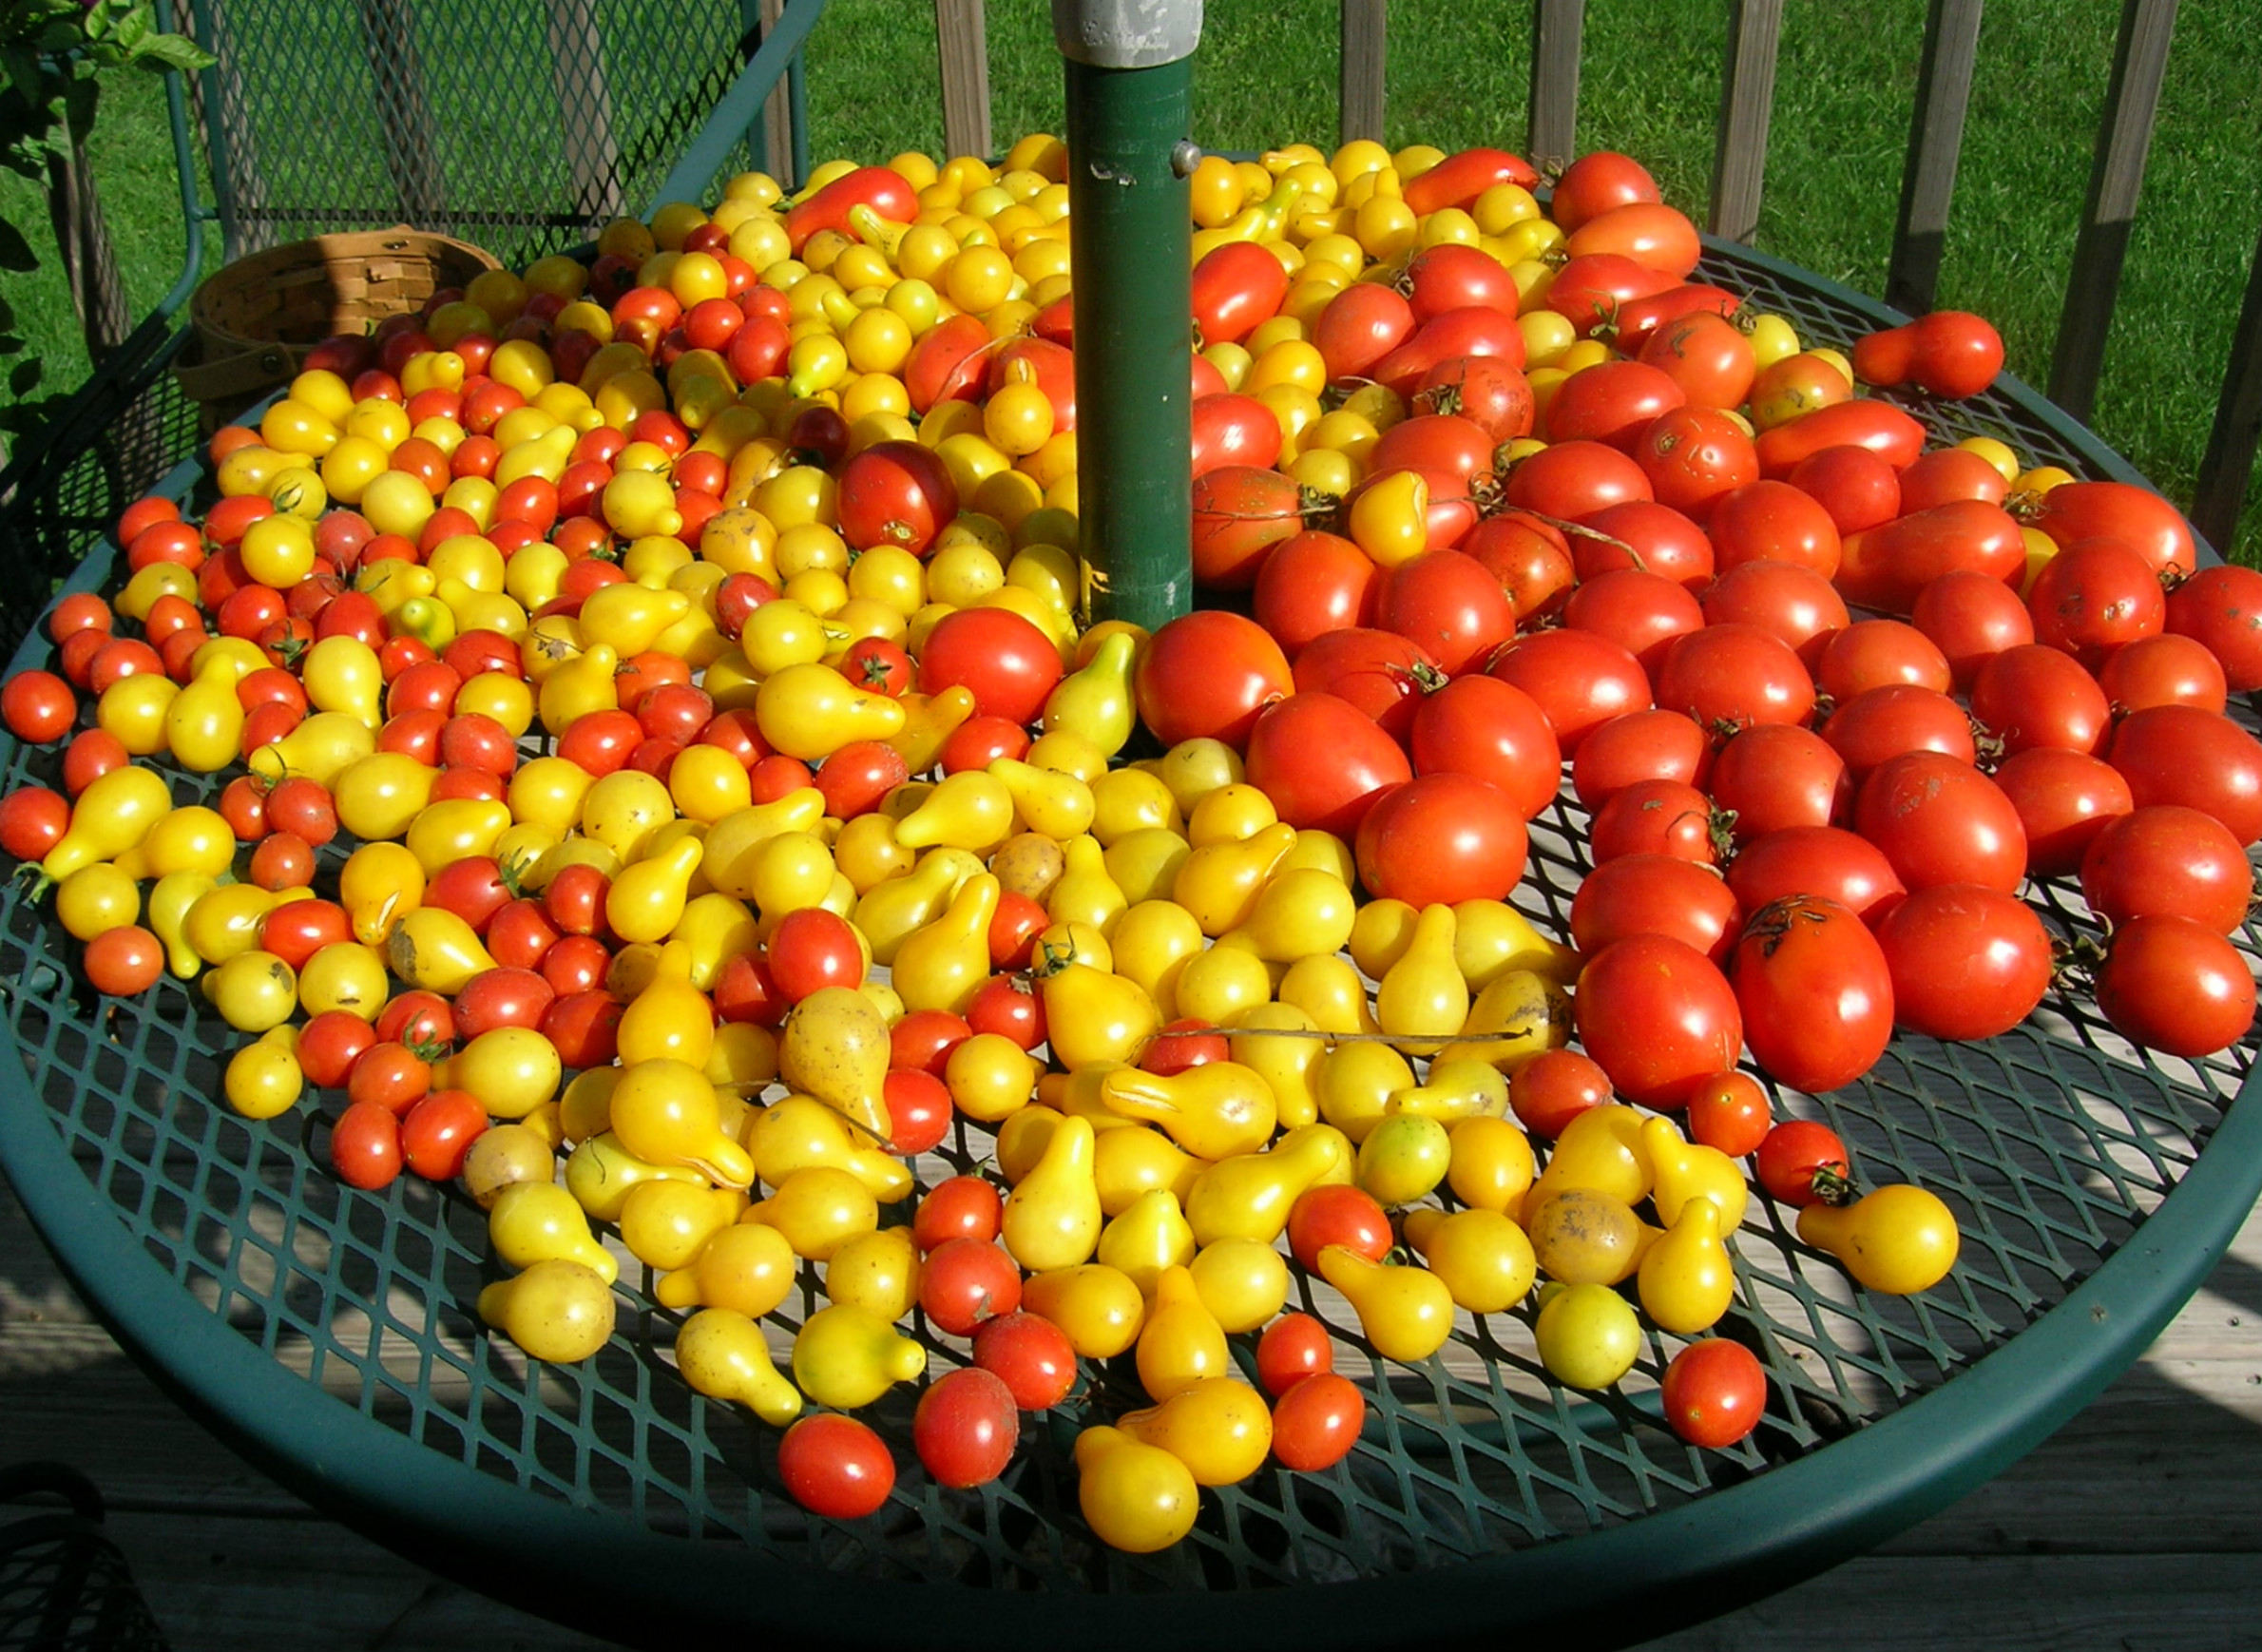 gardening-autumn-harvest-produce-tomatoes.jpg